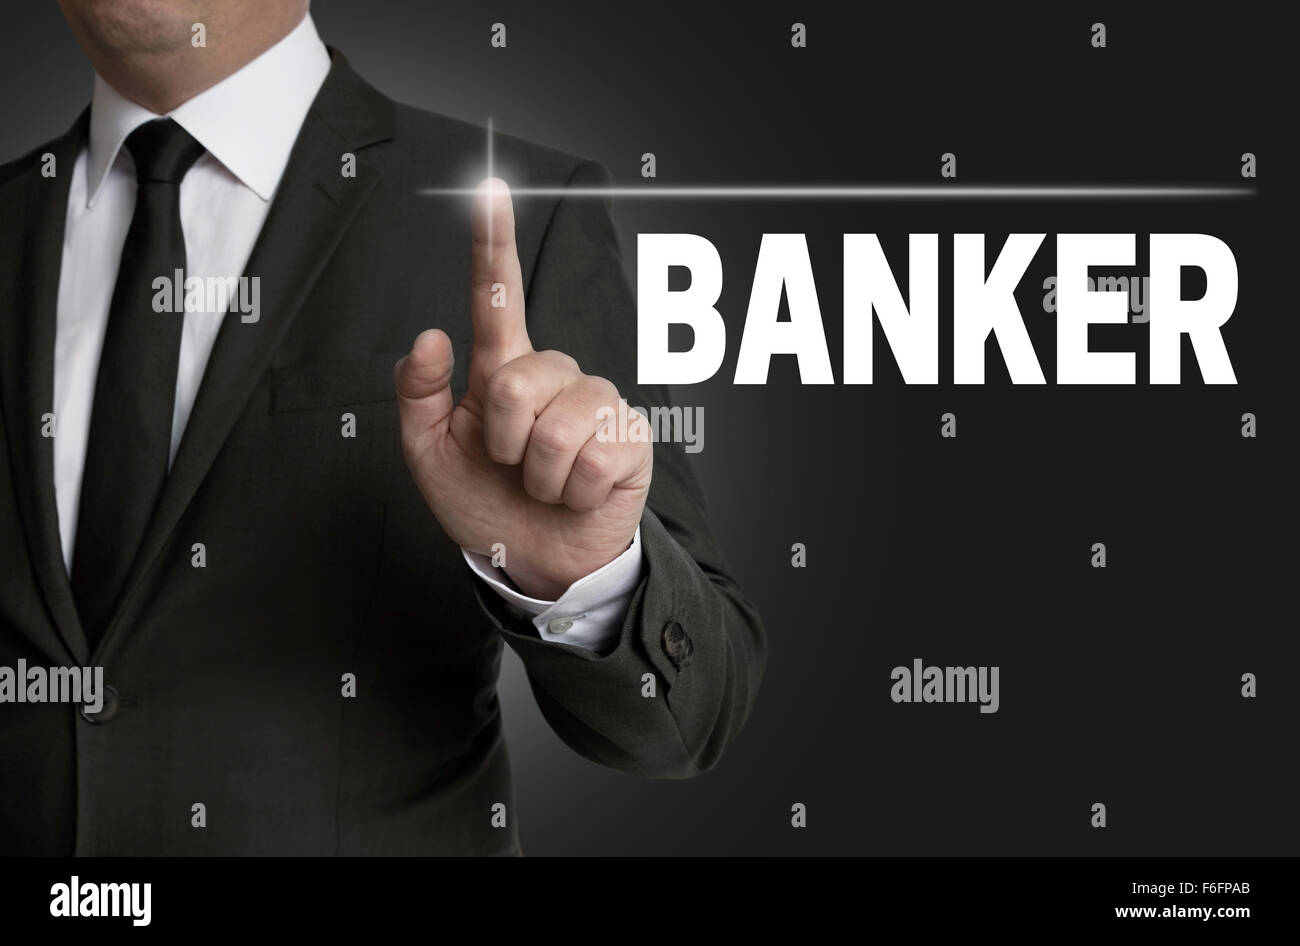 Pantalla táctil del banquero es operado por el empresario concepto. Foto de stock